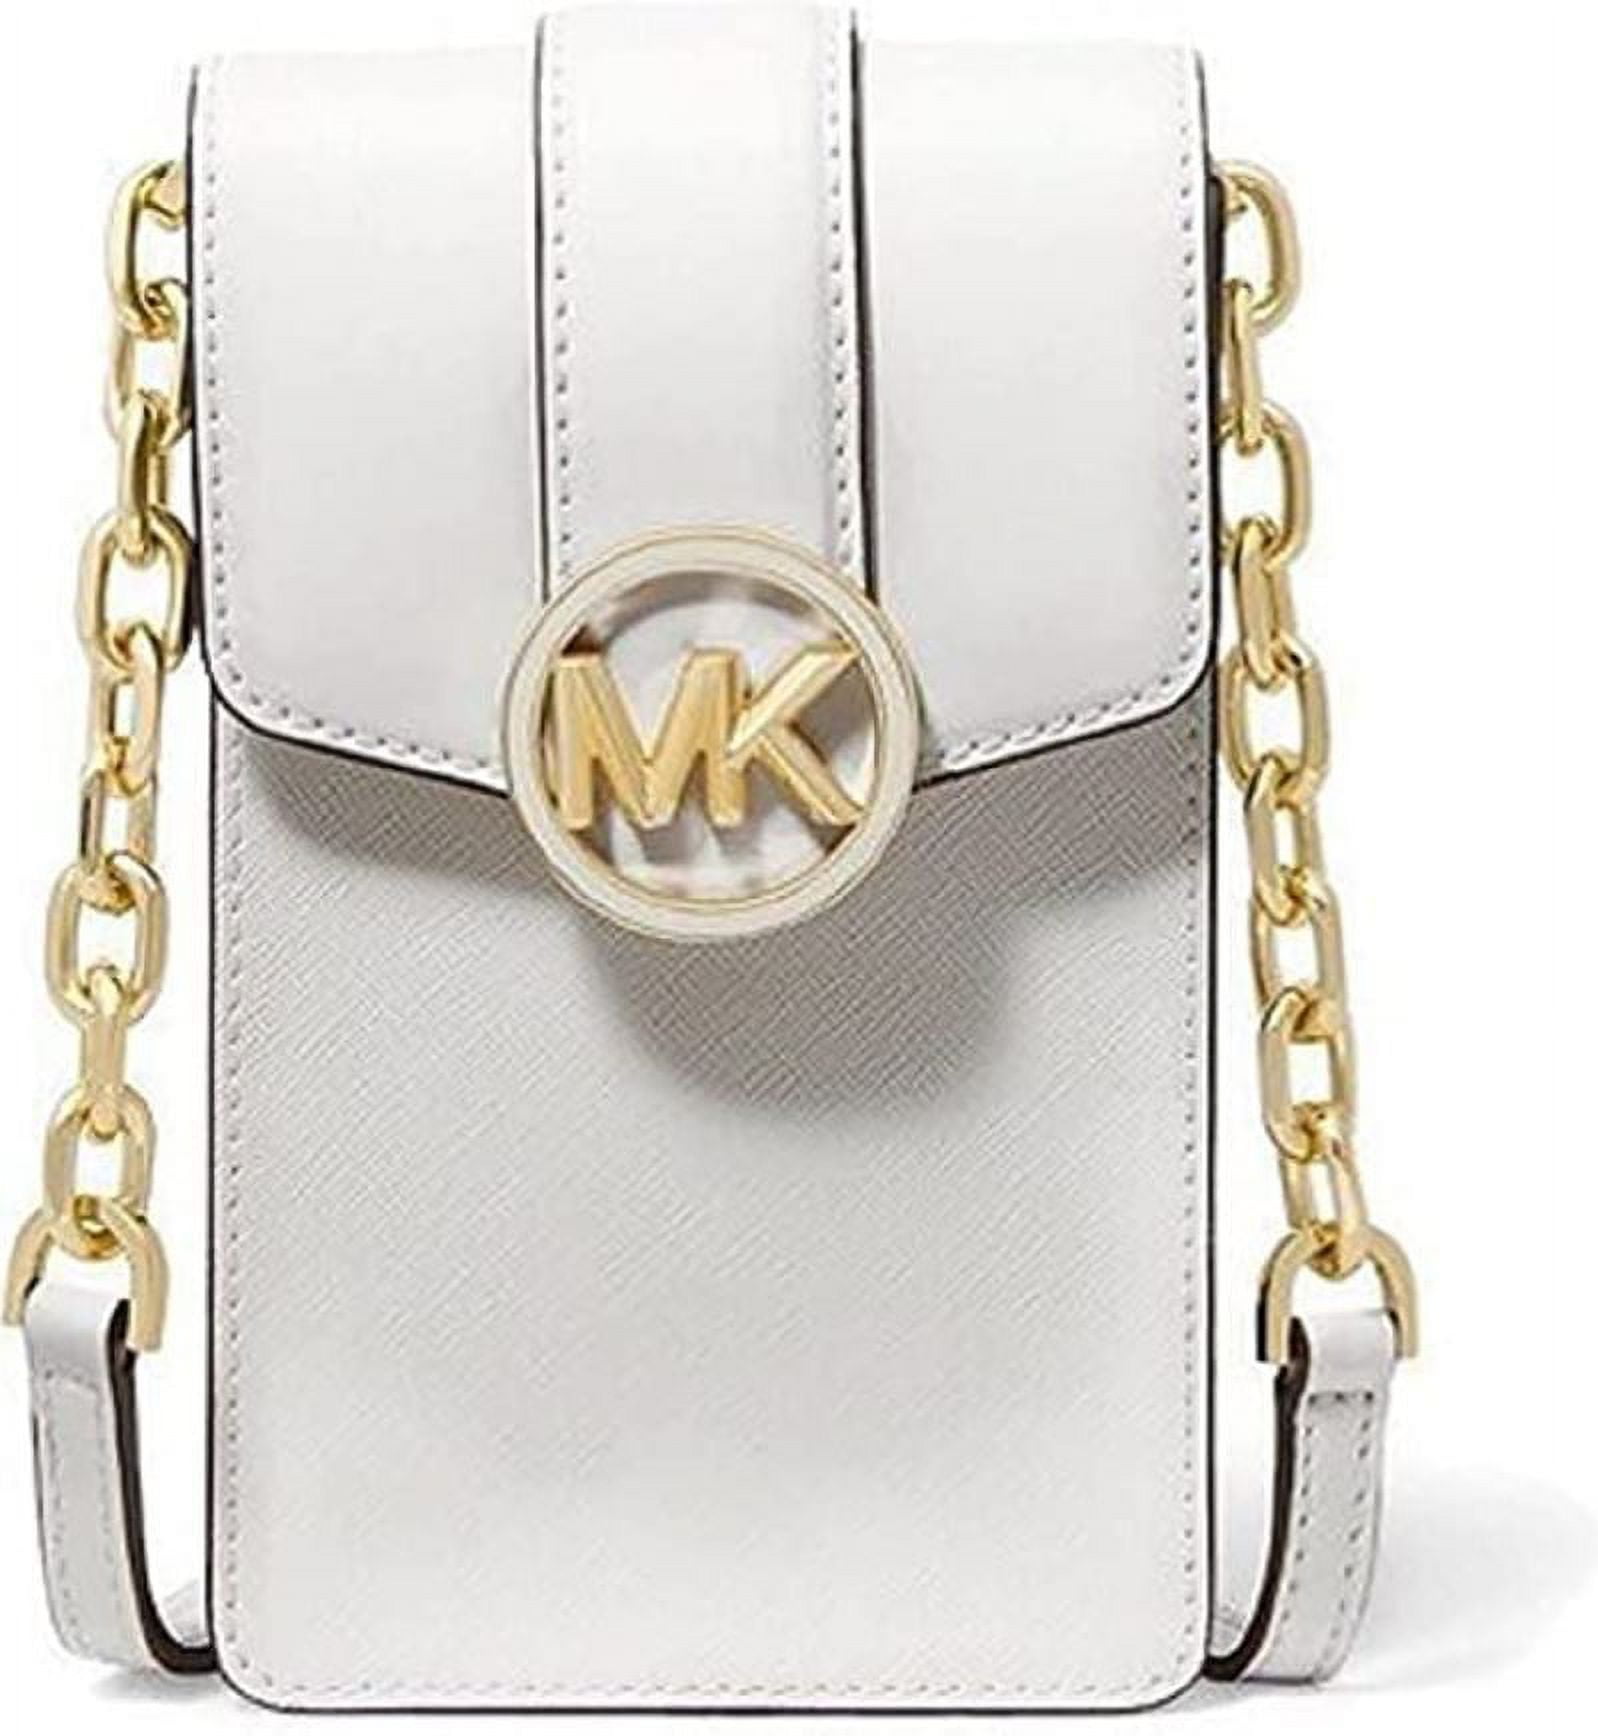 Michael Kors Carmen Small NS Phone Crossbody Bag Mk Vanilla Pink